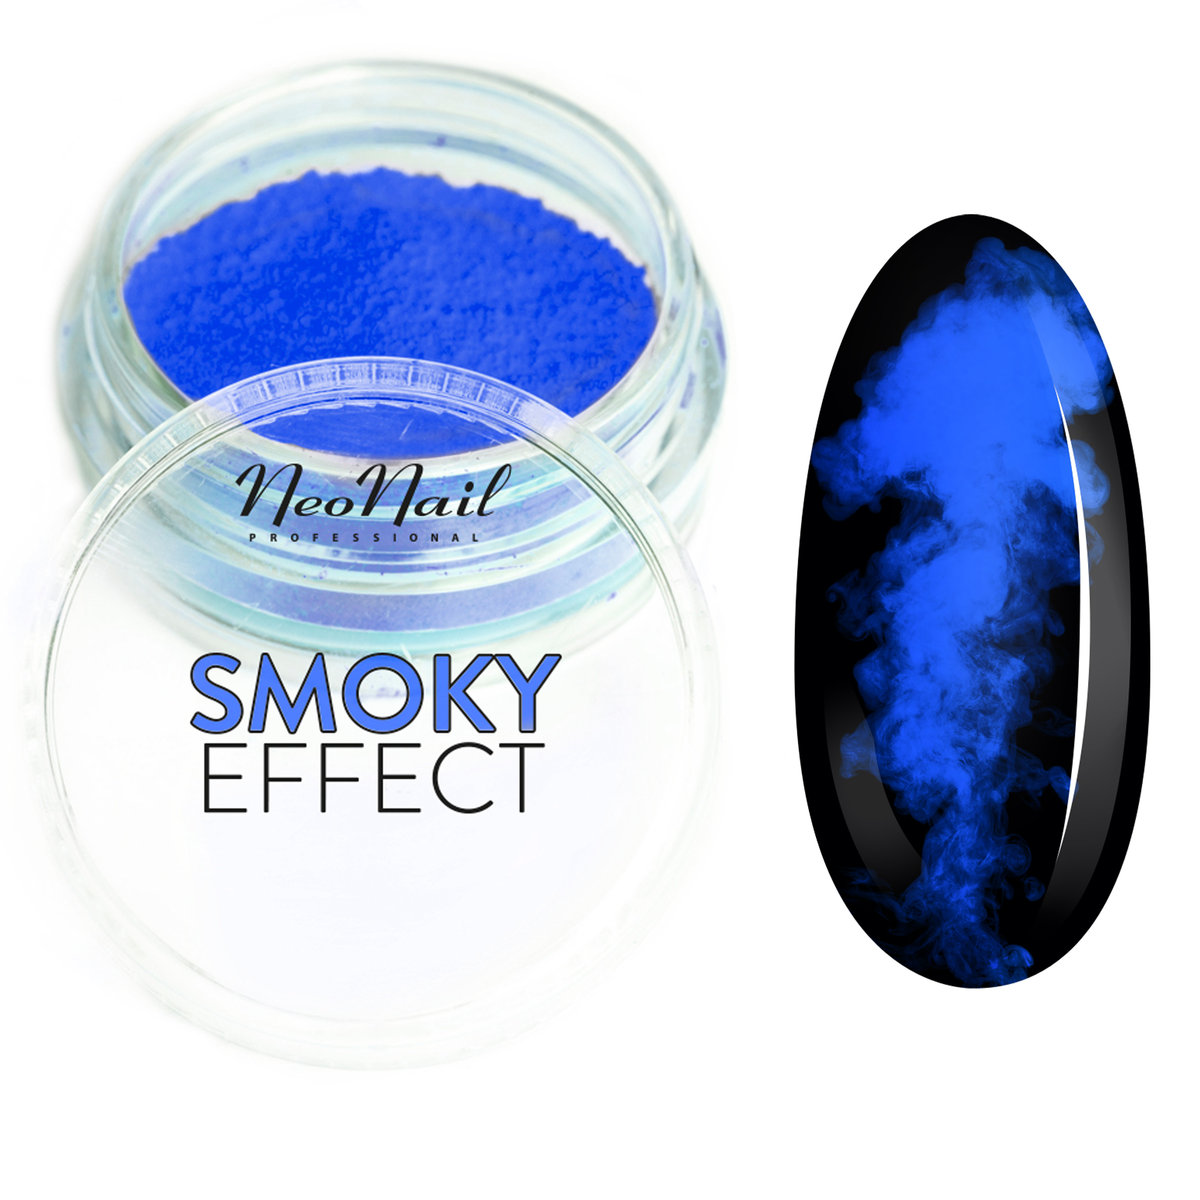 Neonail Smoky Effect - Neonowy pyłek do paznokci - 09 NEOEPPA-01-01-DOPA-06